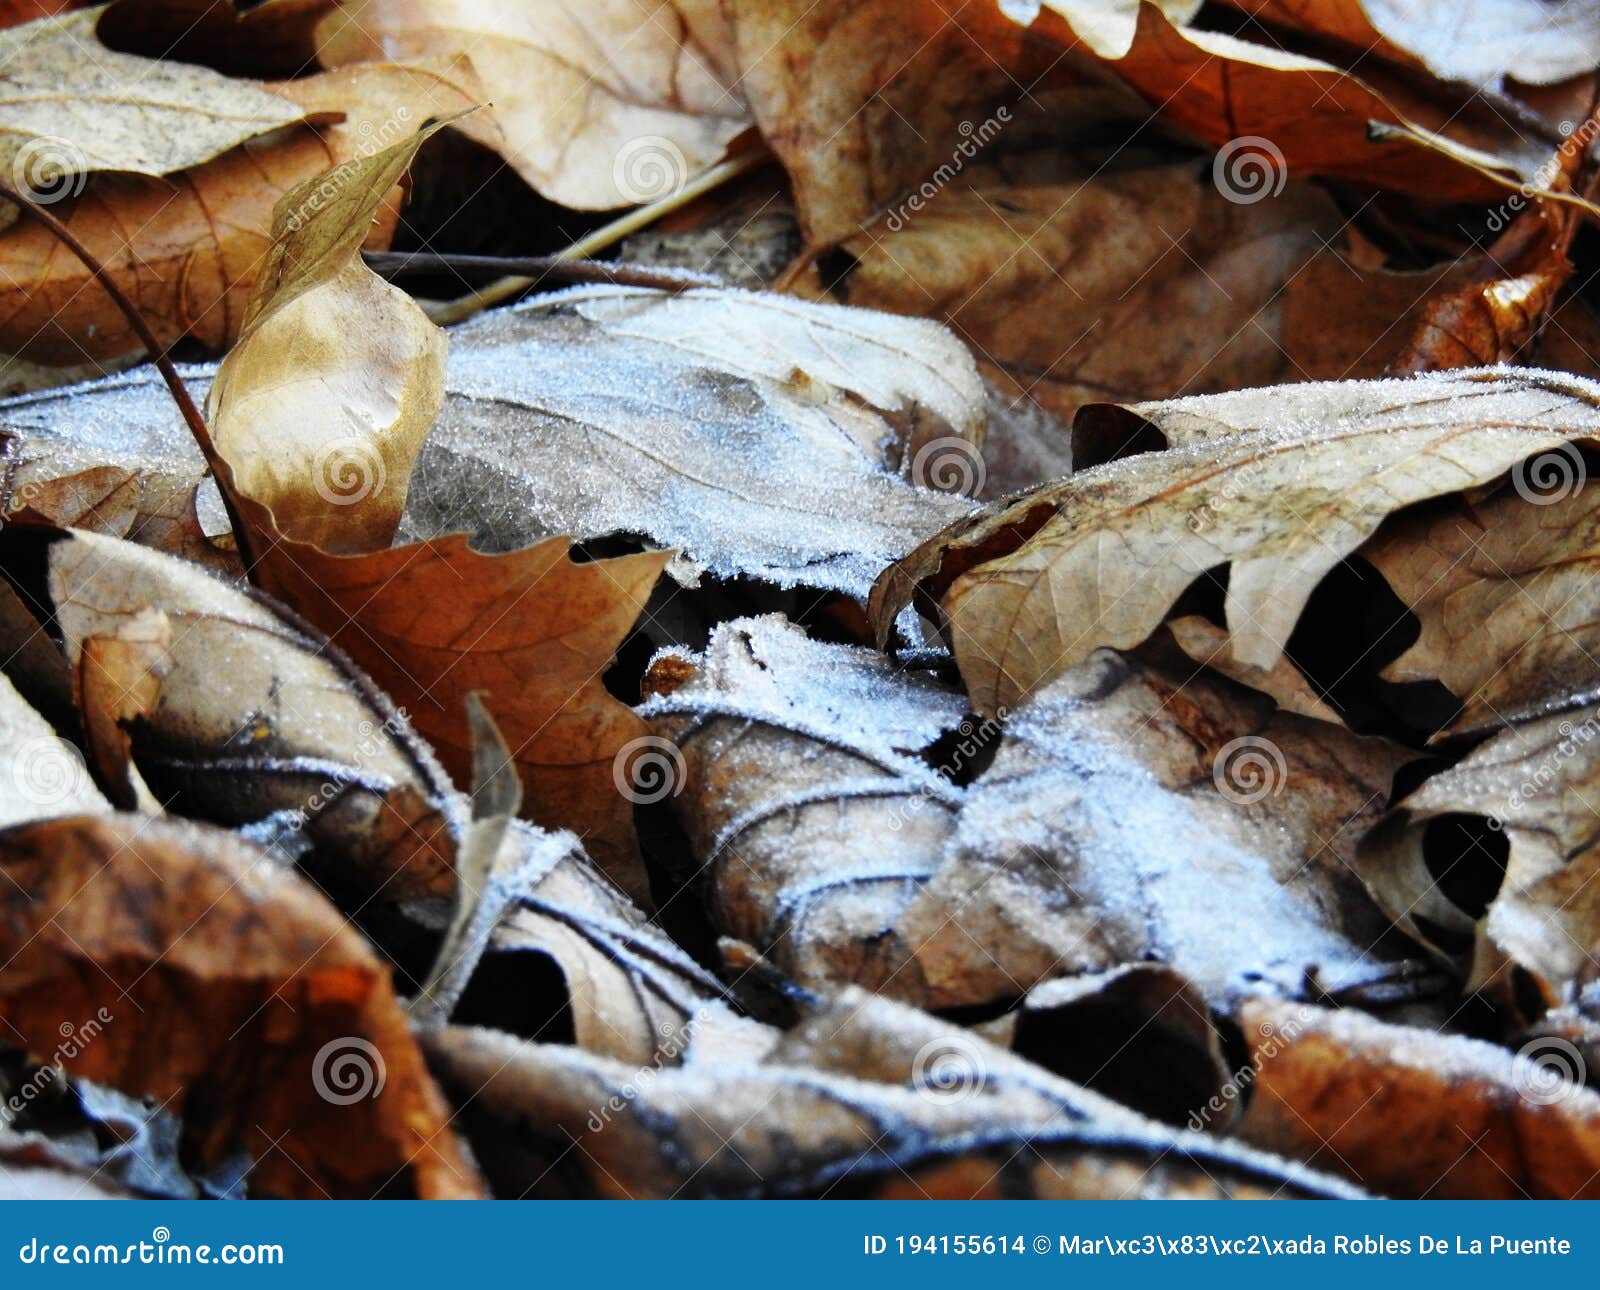 hielo sobre las hojas secas